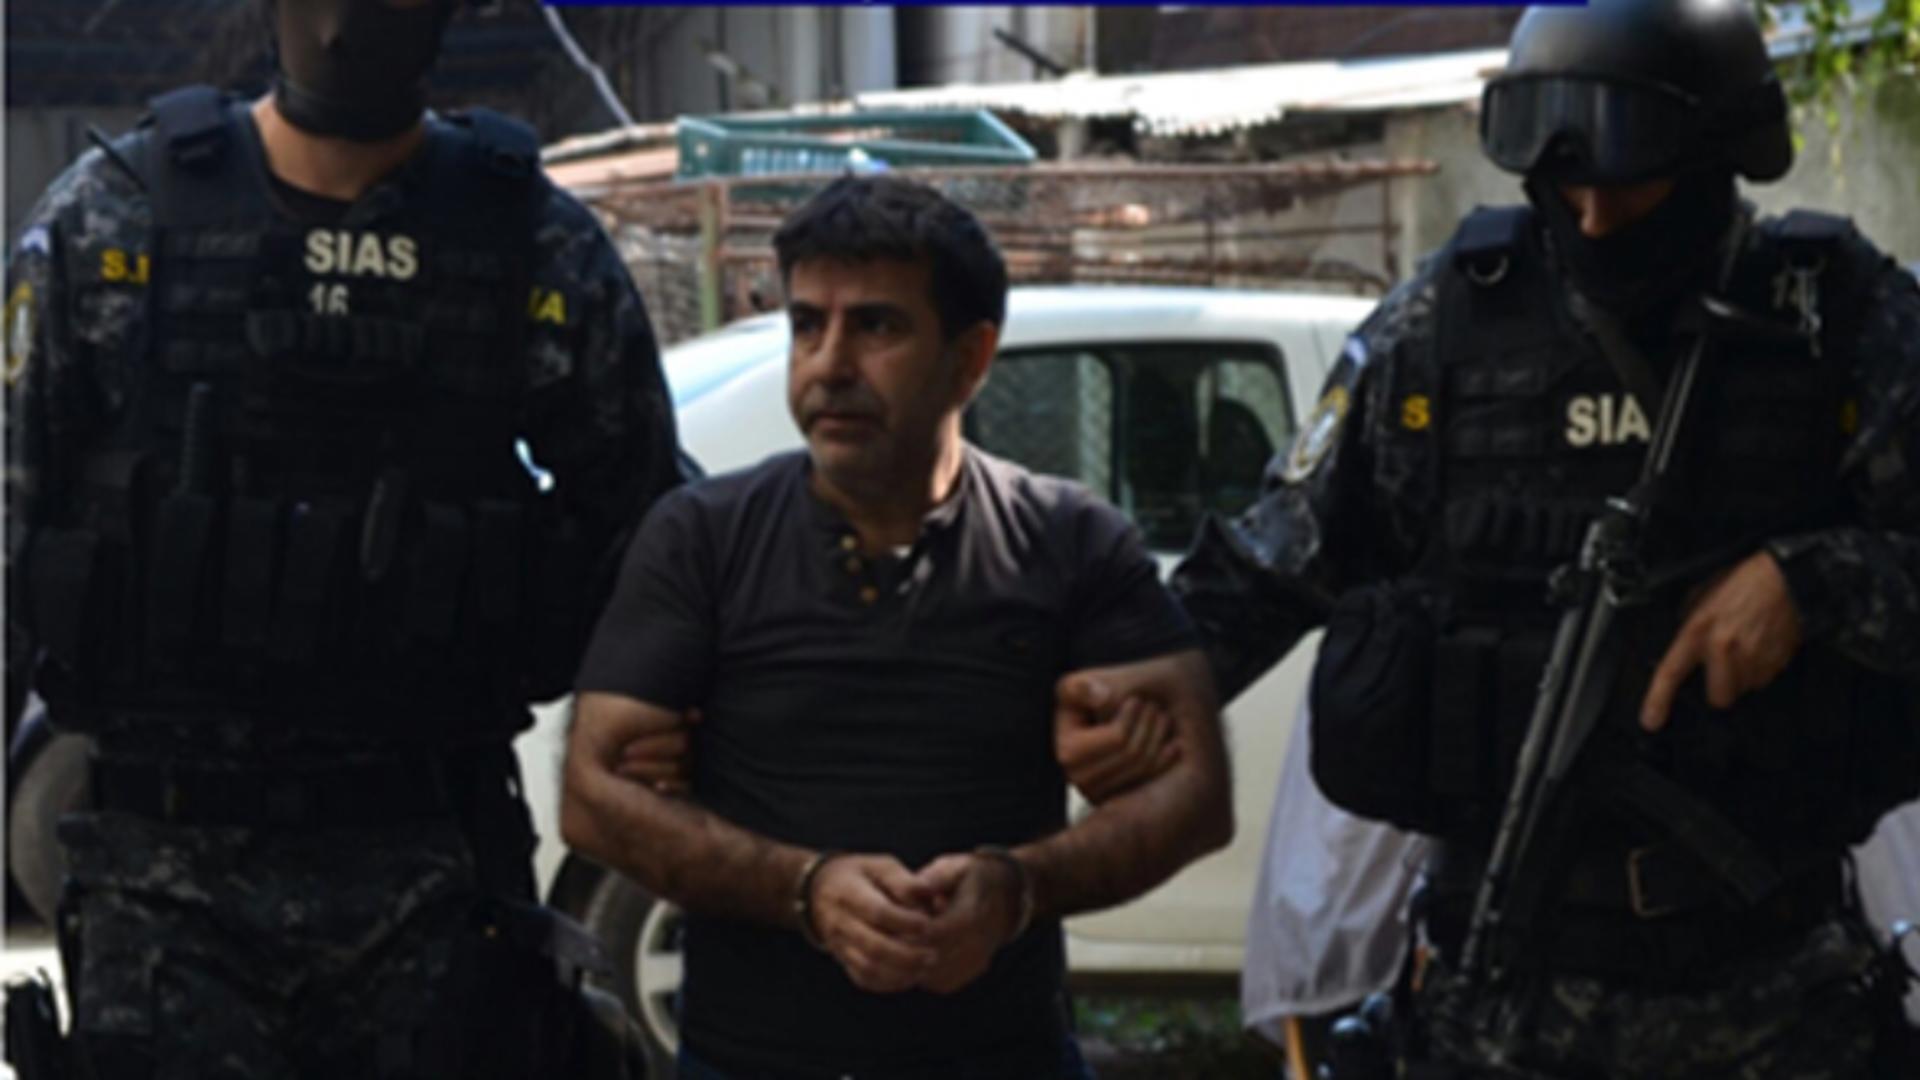 Mohammad Munaf, ELIBERAT după 7 ani - Irakianul a fost condamnat pentru TERORISM în dosarul jurnaliștilor răpiți în Irak